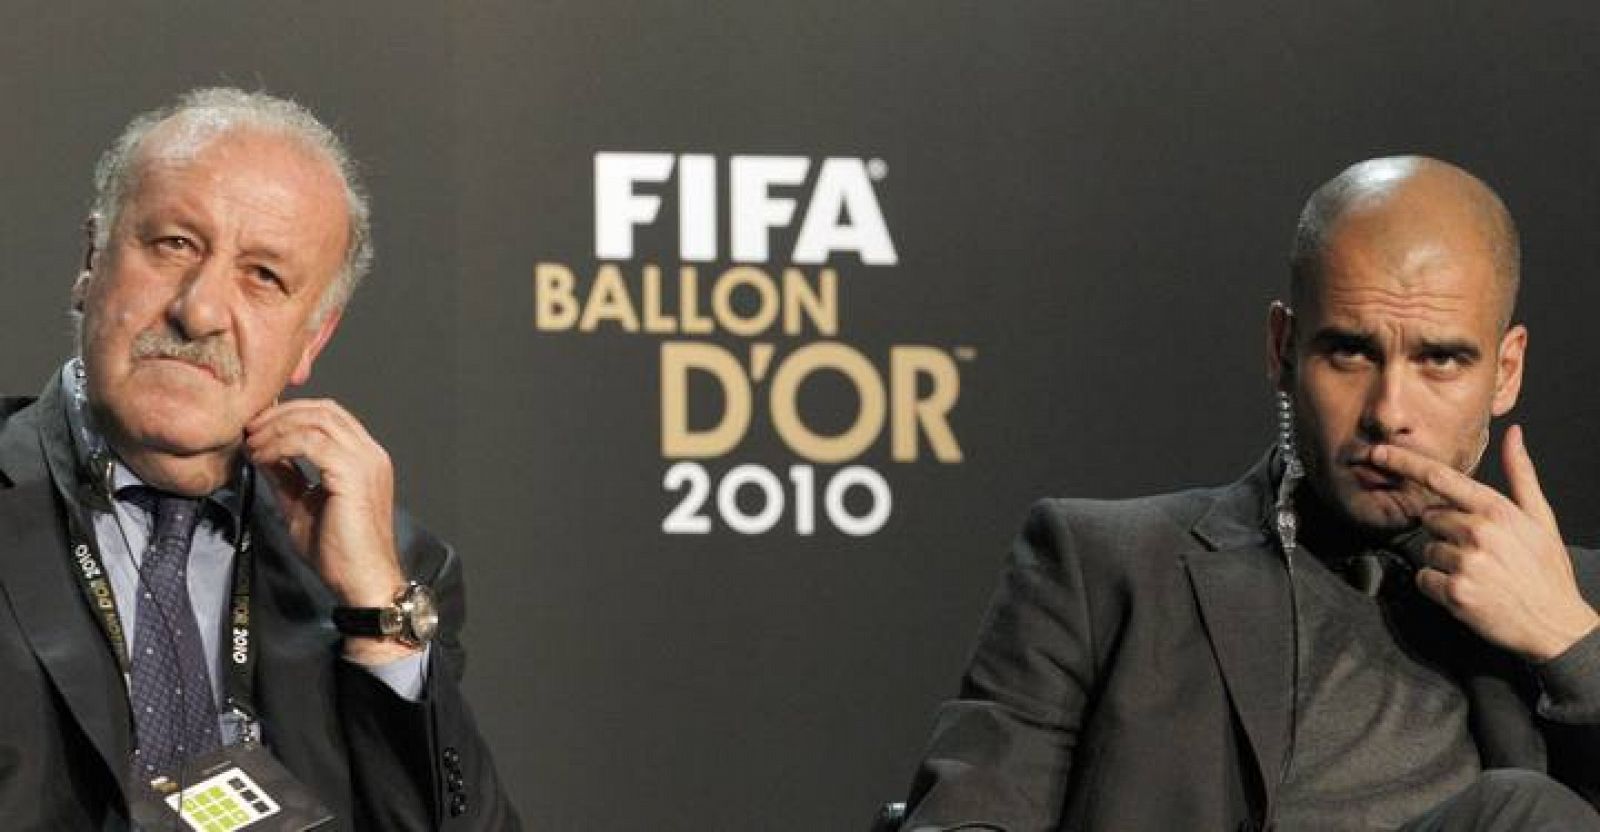 Del Bosque y Guardiola, los dos entrenadores españoles nominados al Balón de Oro 2010 y grandes valedores de la cantera.